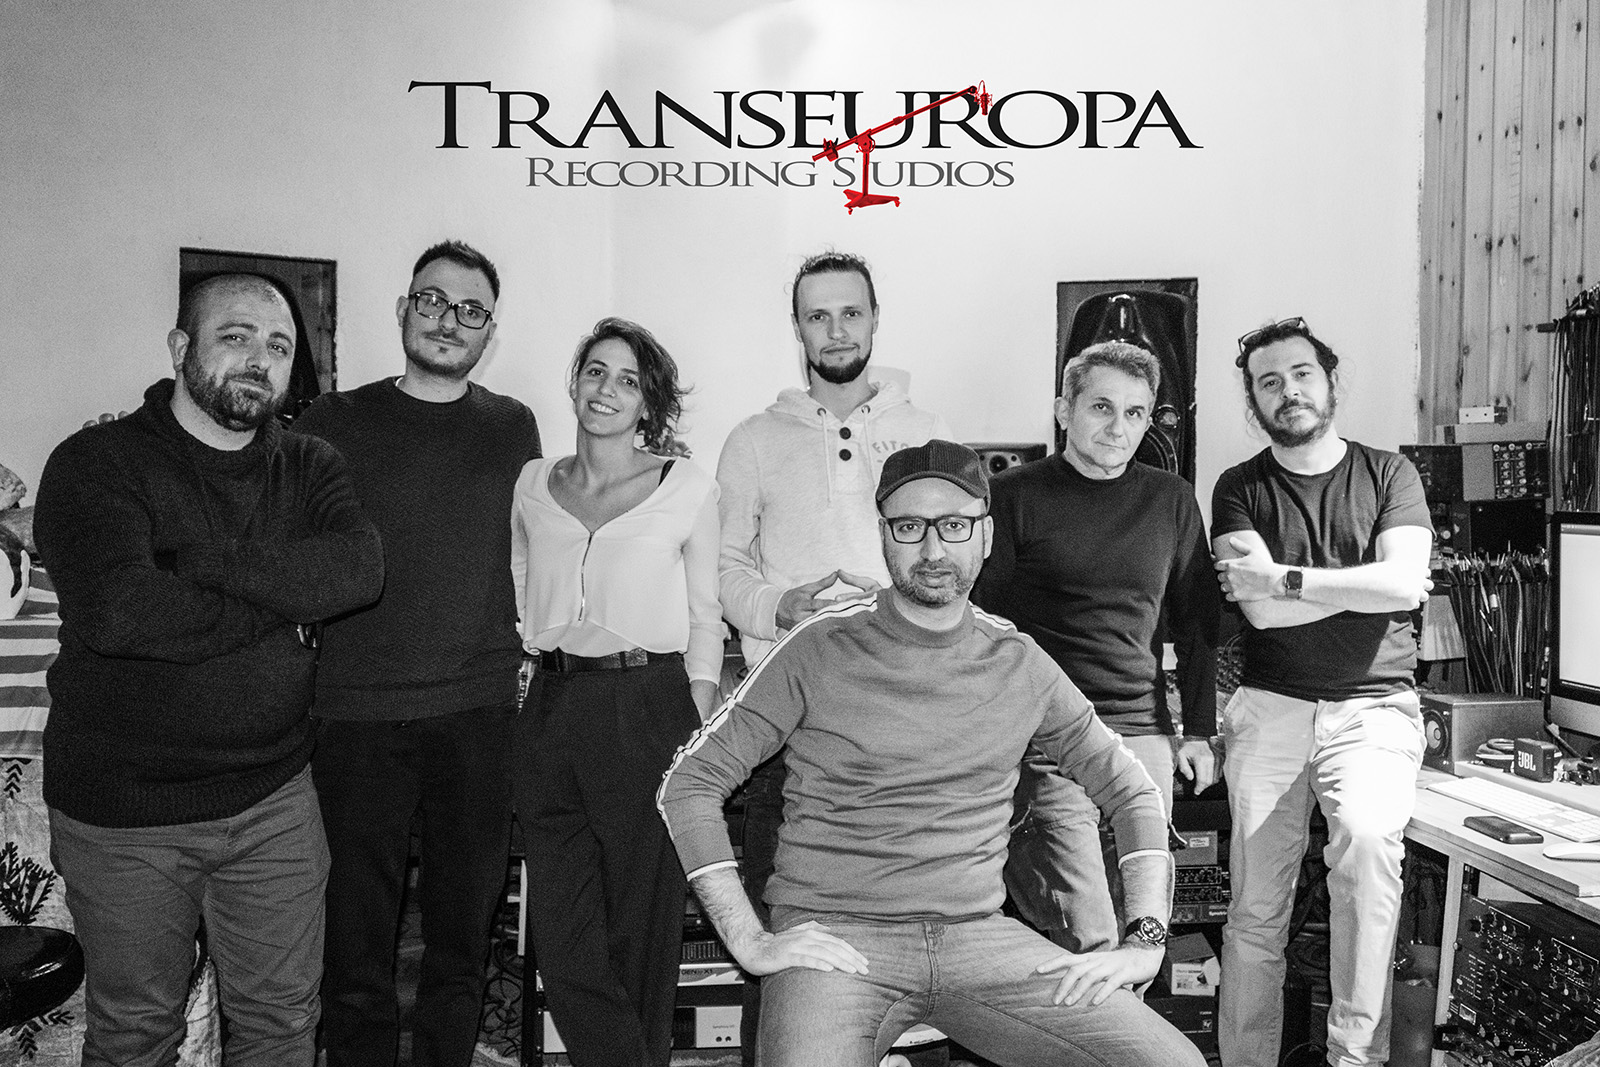 La famiglia del Transeuropa Recording si allarga!